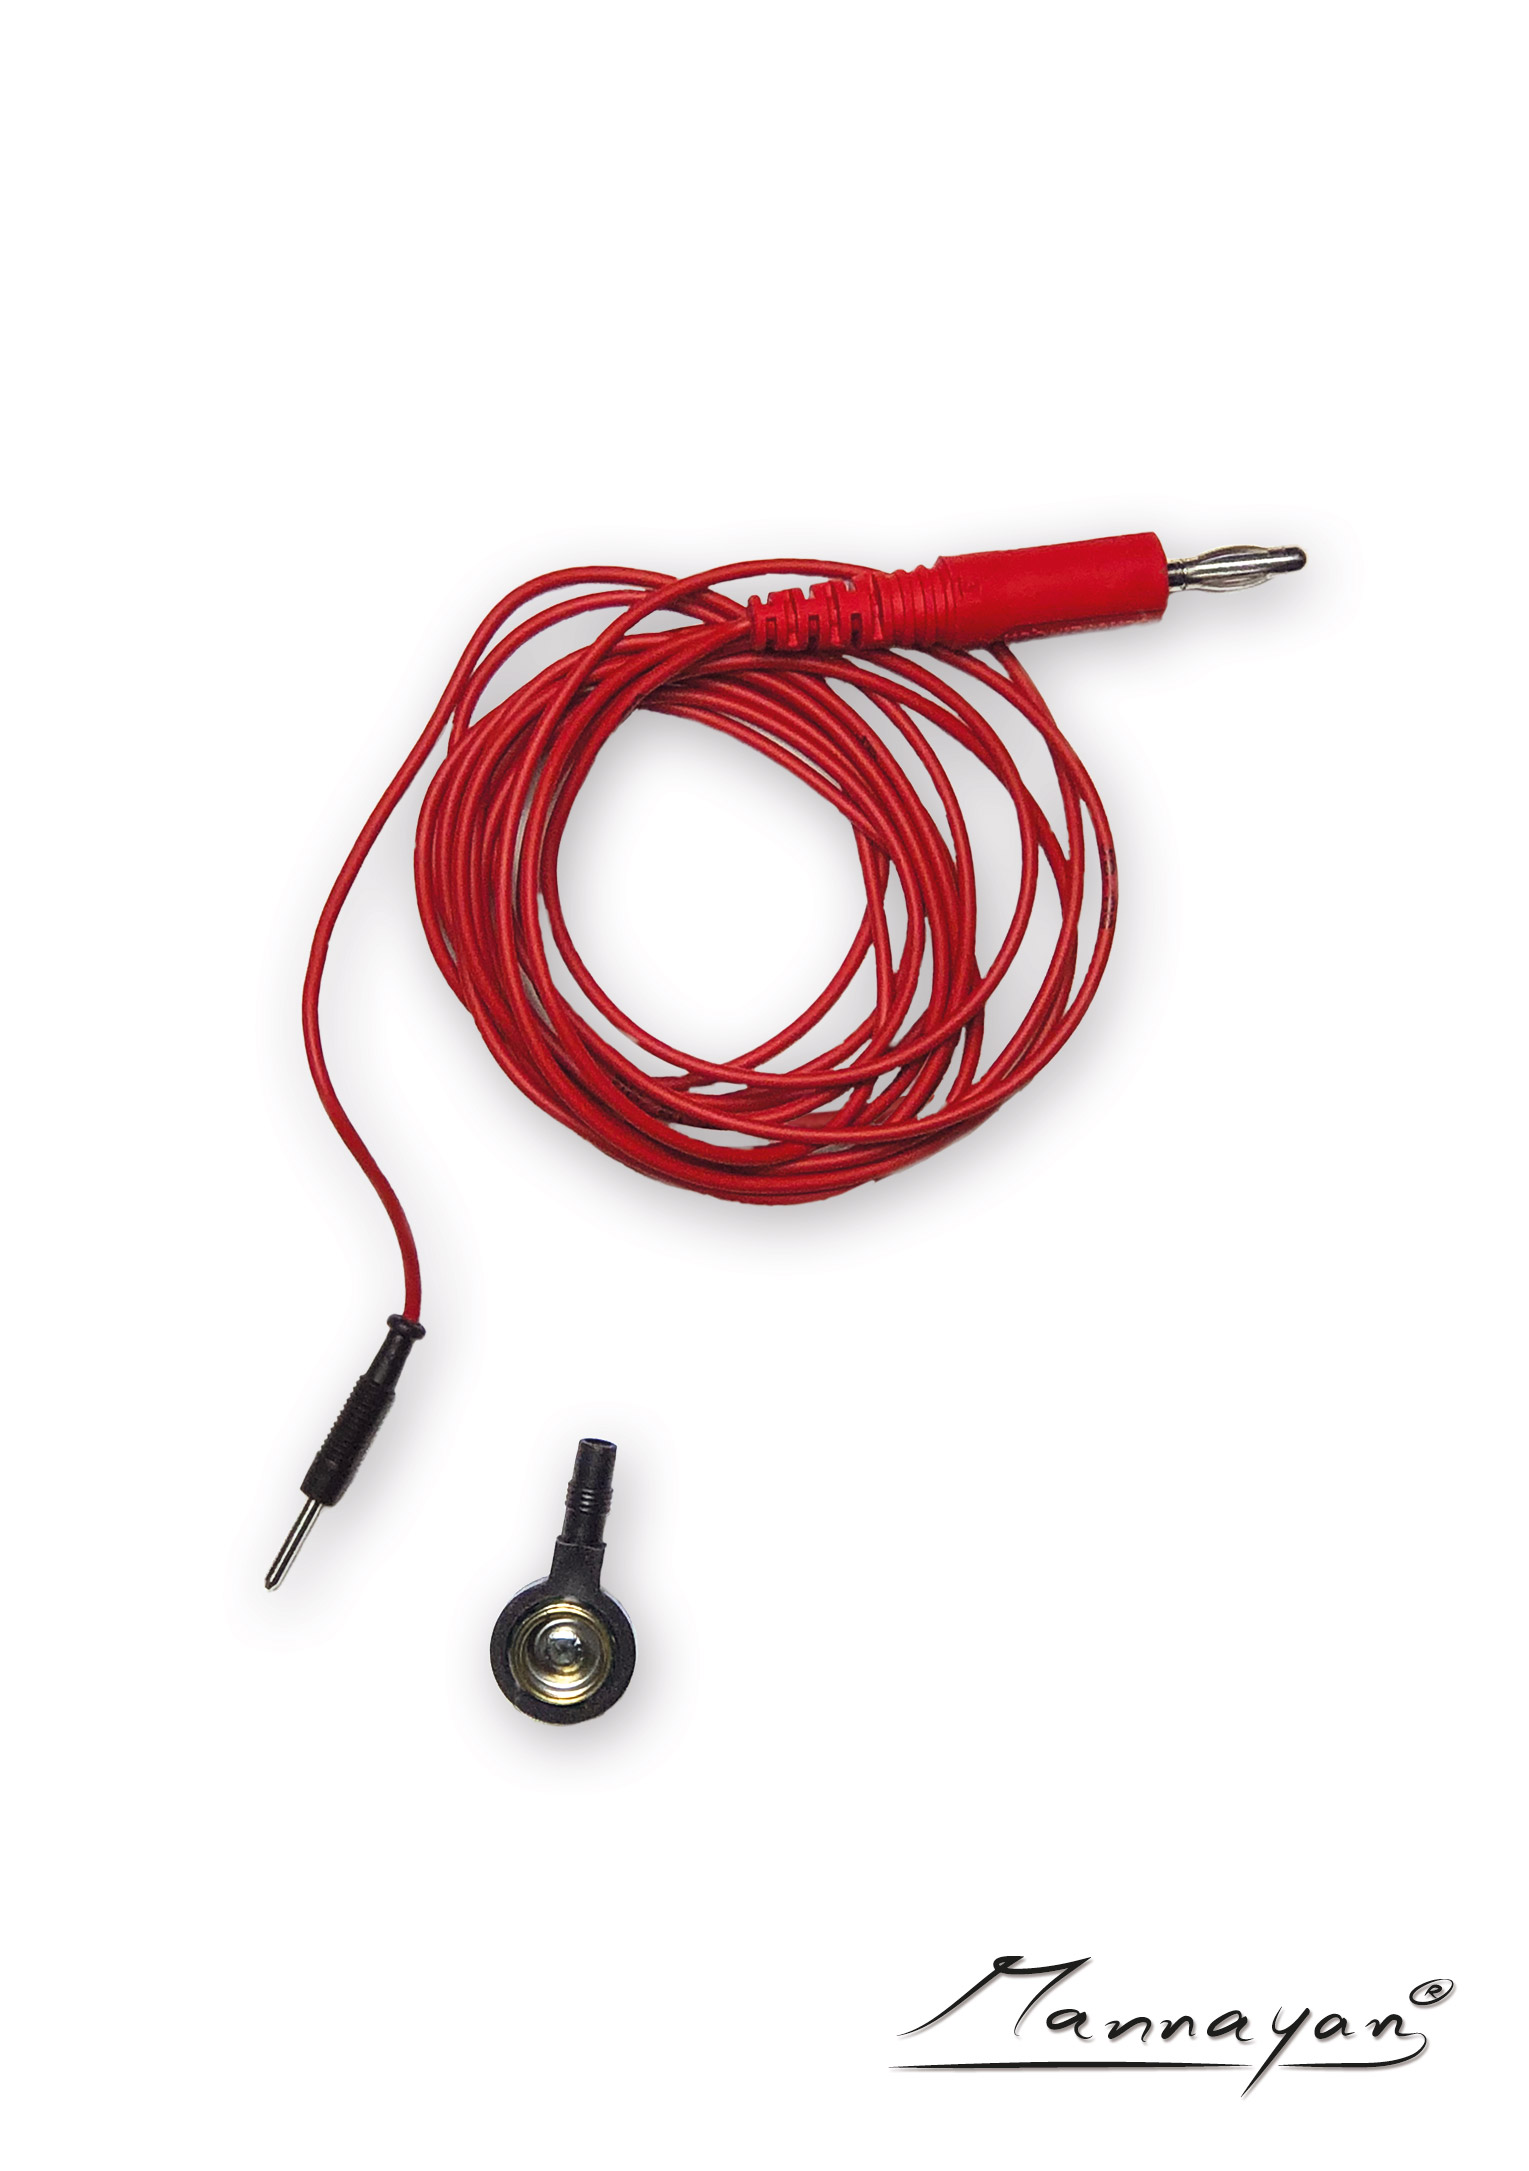 Cable (2,5 m) con adaptador de conector para electrodos textiles de superficie (rojo)